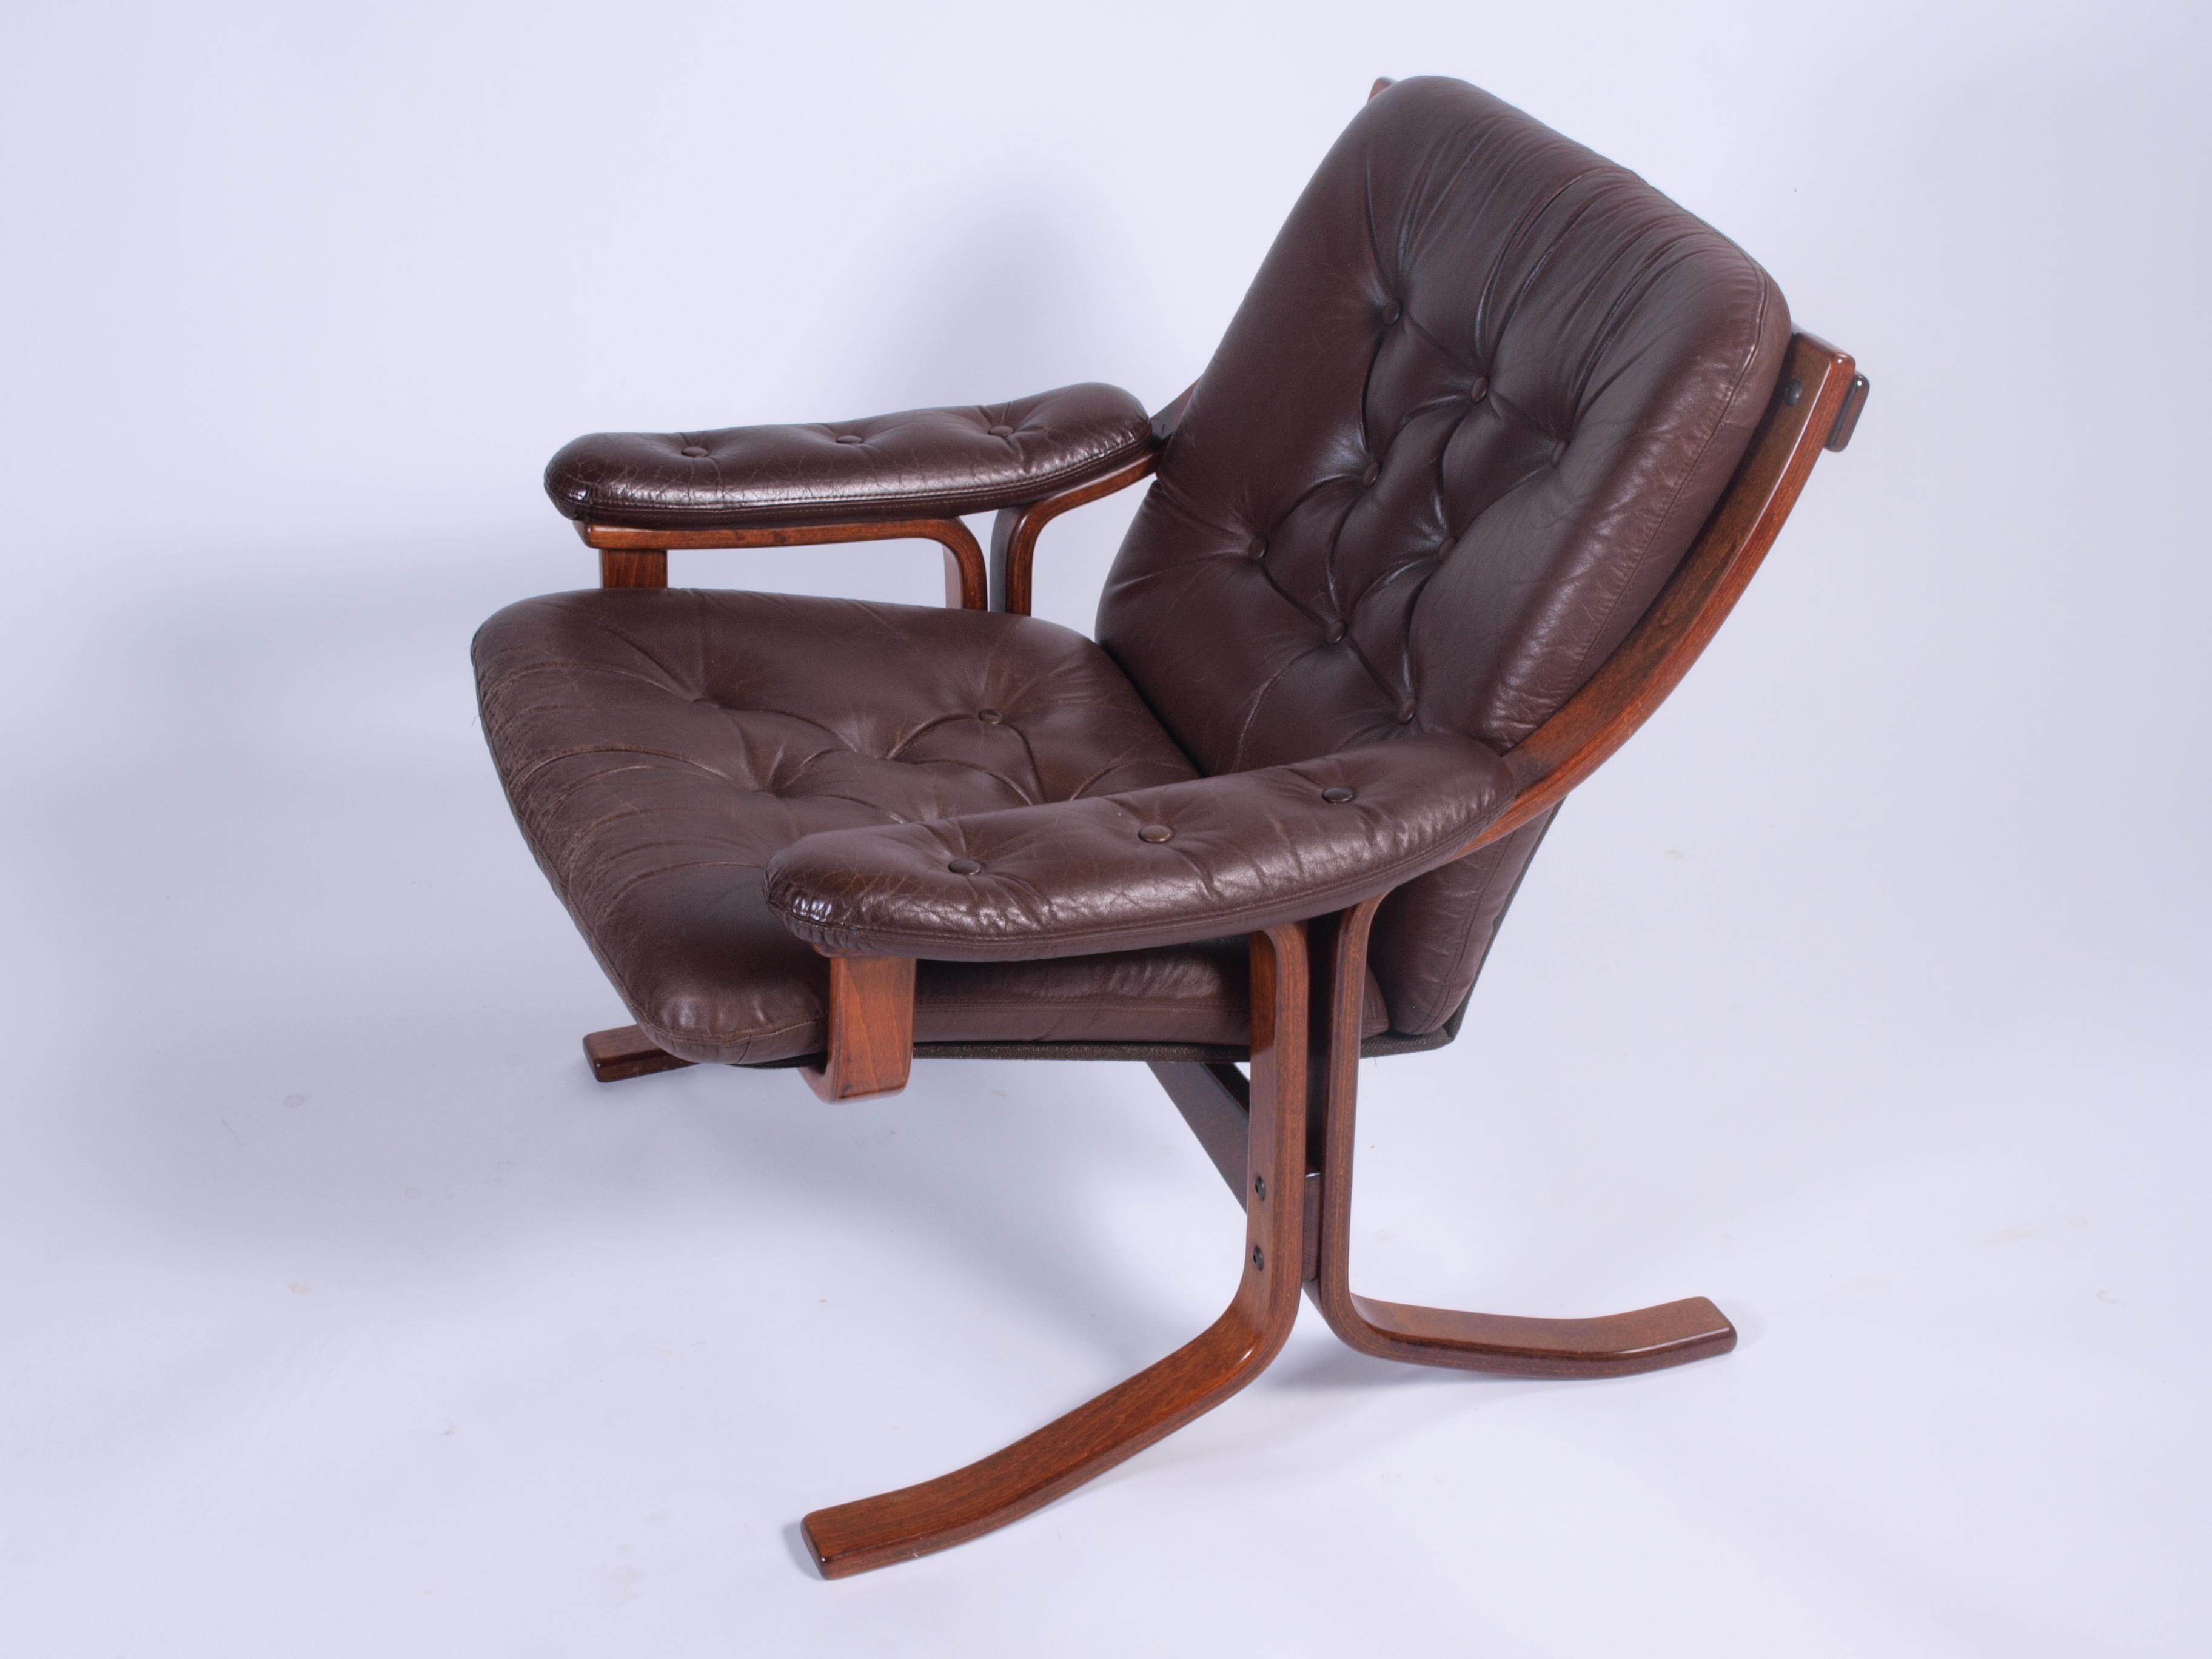 Ce fauteuil norvégien élégant et exceptionnellement confortable date des années 1970. Fabriquée en bois de hêtre teinté et verni, cette chaise présente un design unique de Jon Hjortdal pour Velledalen Mobler.

La magnifique tapisserie d'ameublement